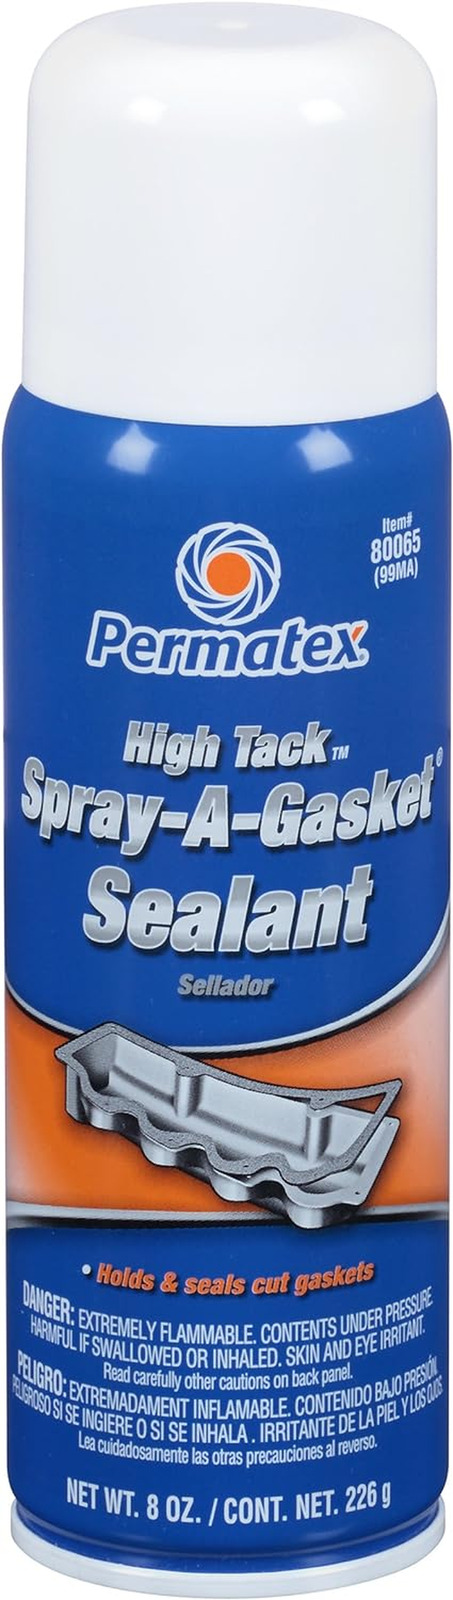 Permatex 80065 High Tack Spray-A-Gasket Sealant, 8 Oz. Net Aerosol Can